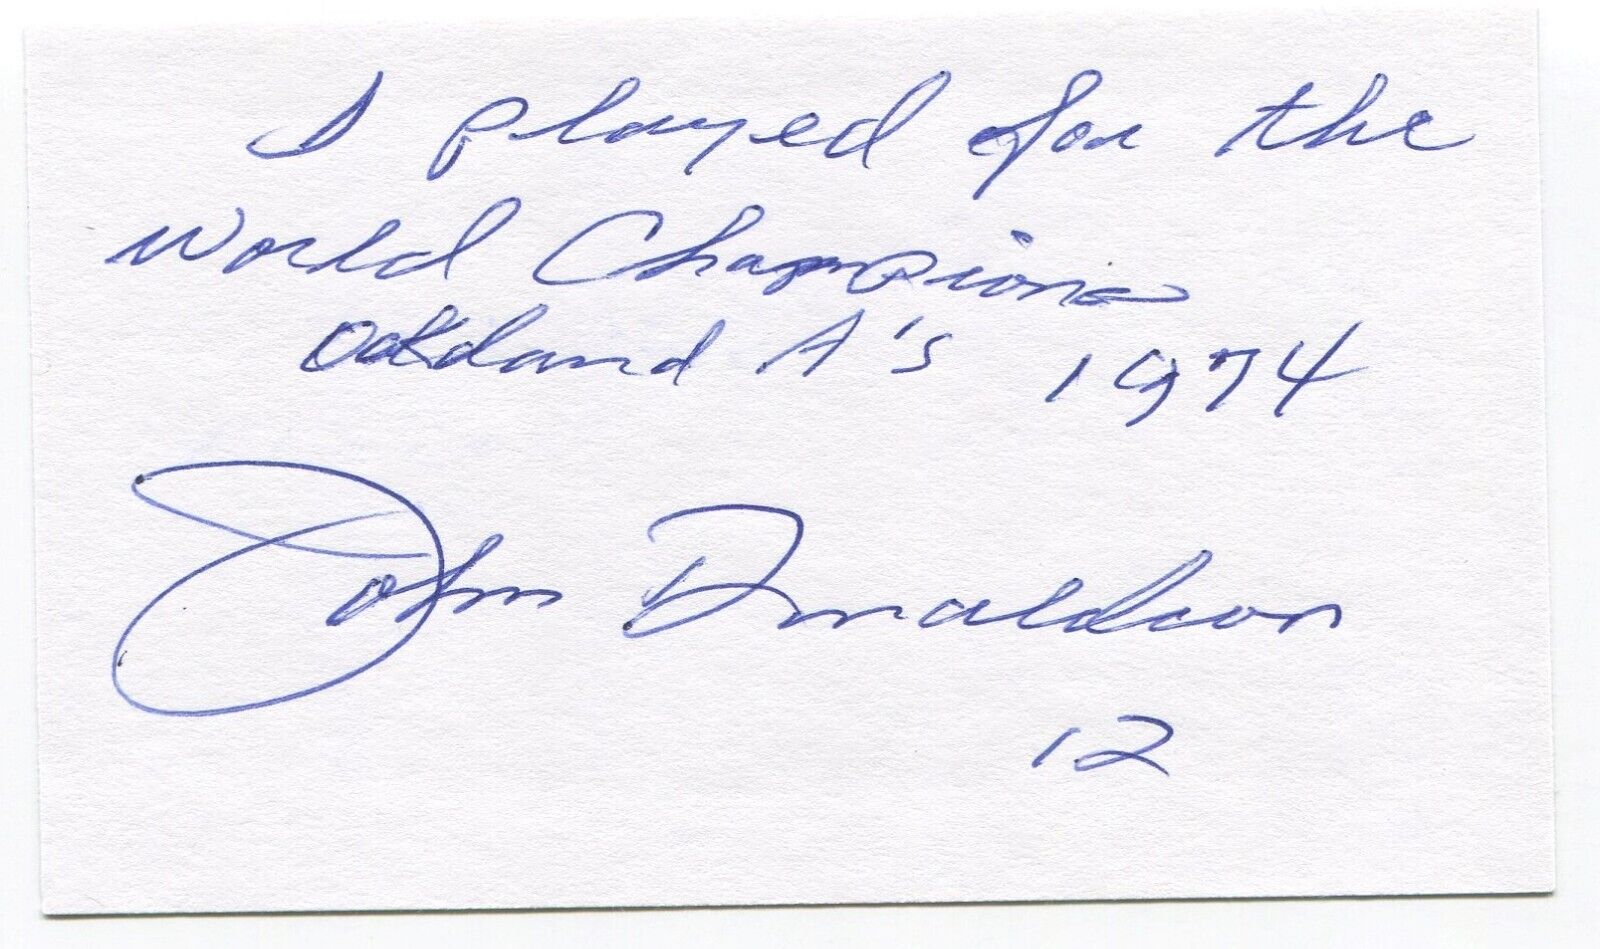 John Donaldson Signed 3x5 Index Card Autographed MLB Baseball 1974 Athletics